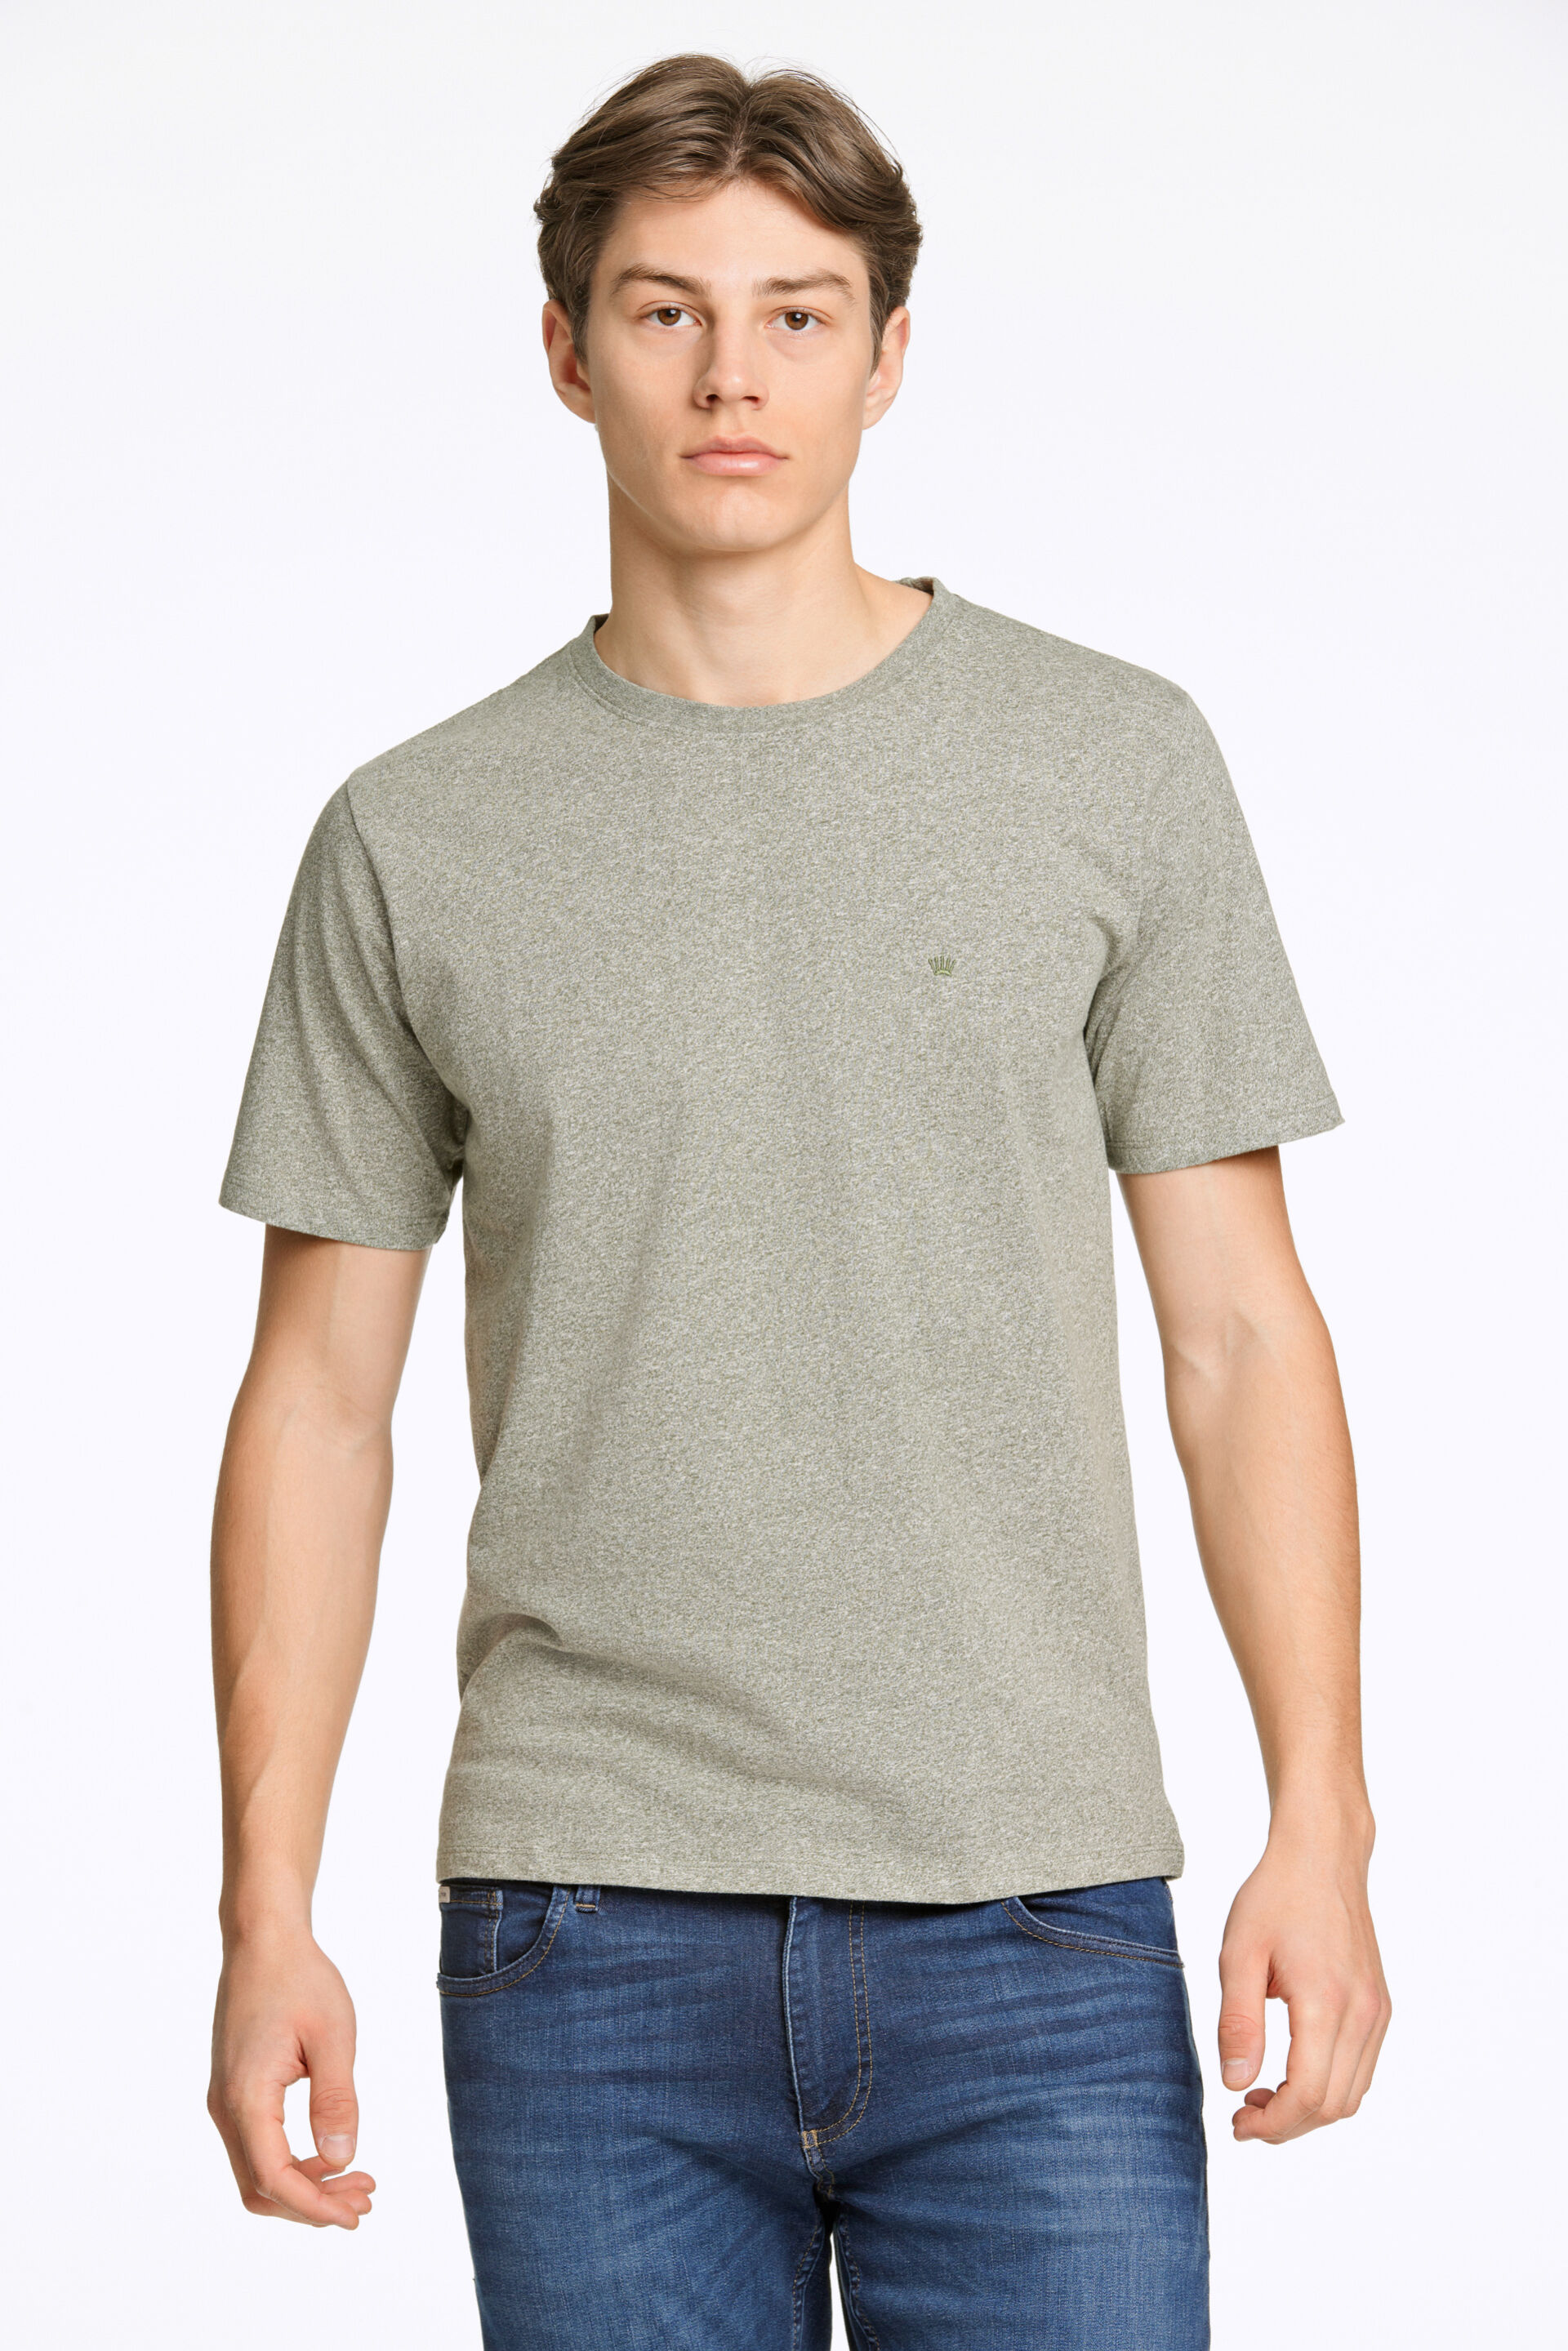 Junk de Luxe  T-shirt Grøn 60-455009